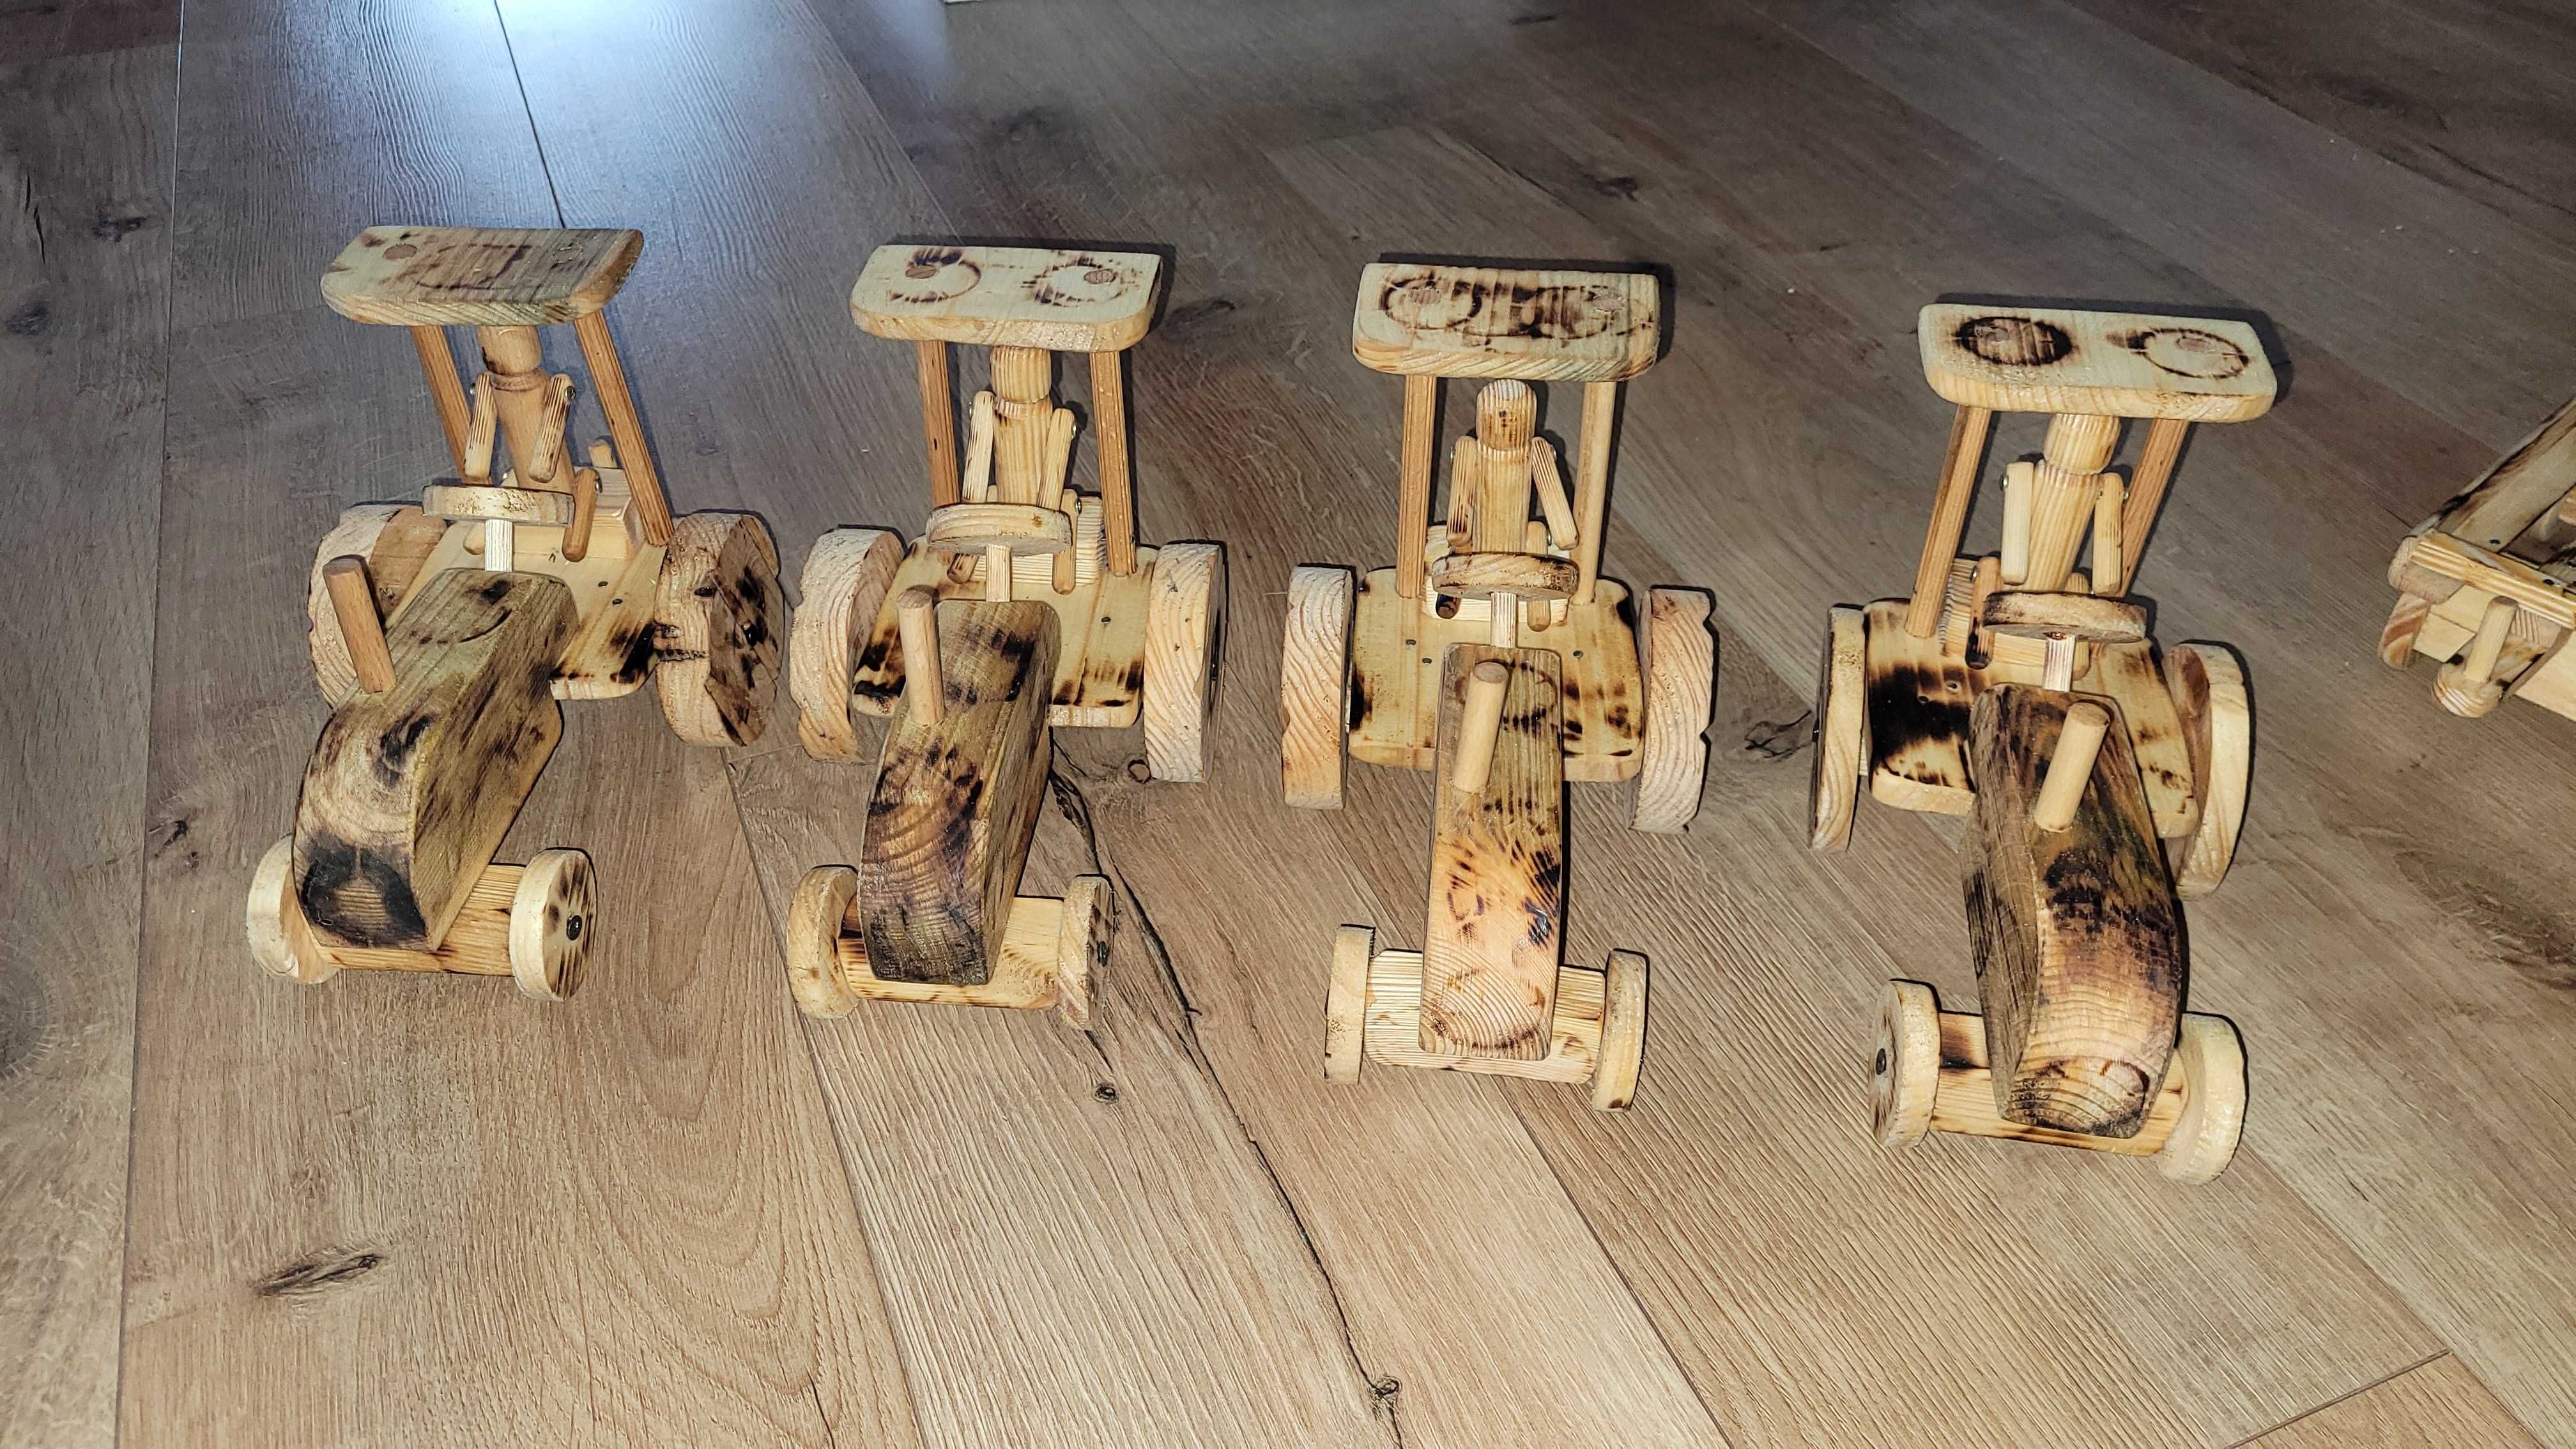 Drewniany traktor pojazd zabawka drewniana z drewna eko rękodzieło